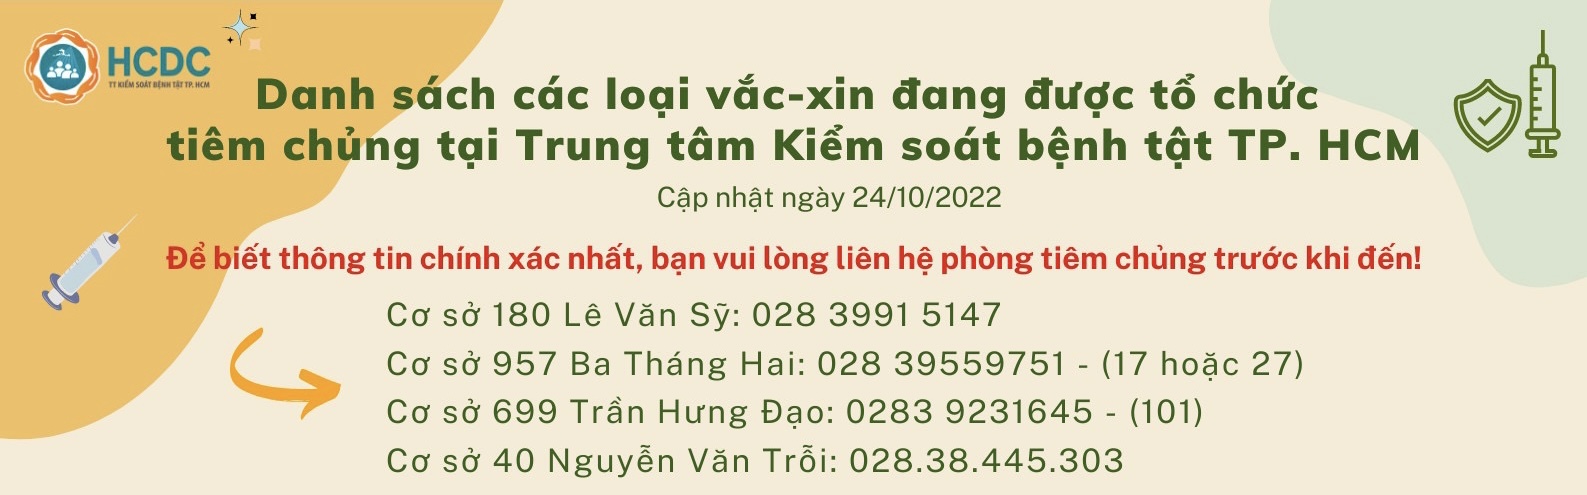 Danh sách các loại vắc-xin đang được tổ chức tiêm chủng tại Trung tâm Kiểm soát bệnh tật TP. Hồ Chí Minh (cập nhật 7:00 giờ ngày 24/10/2022)